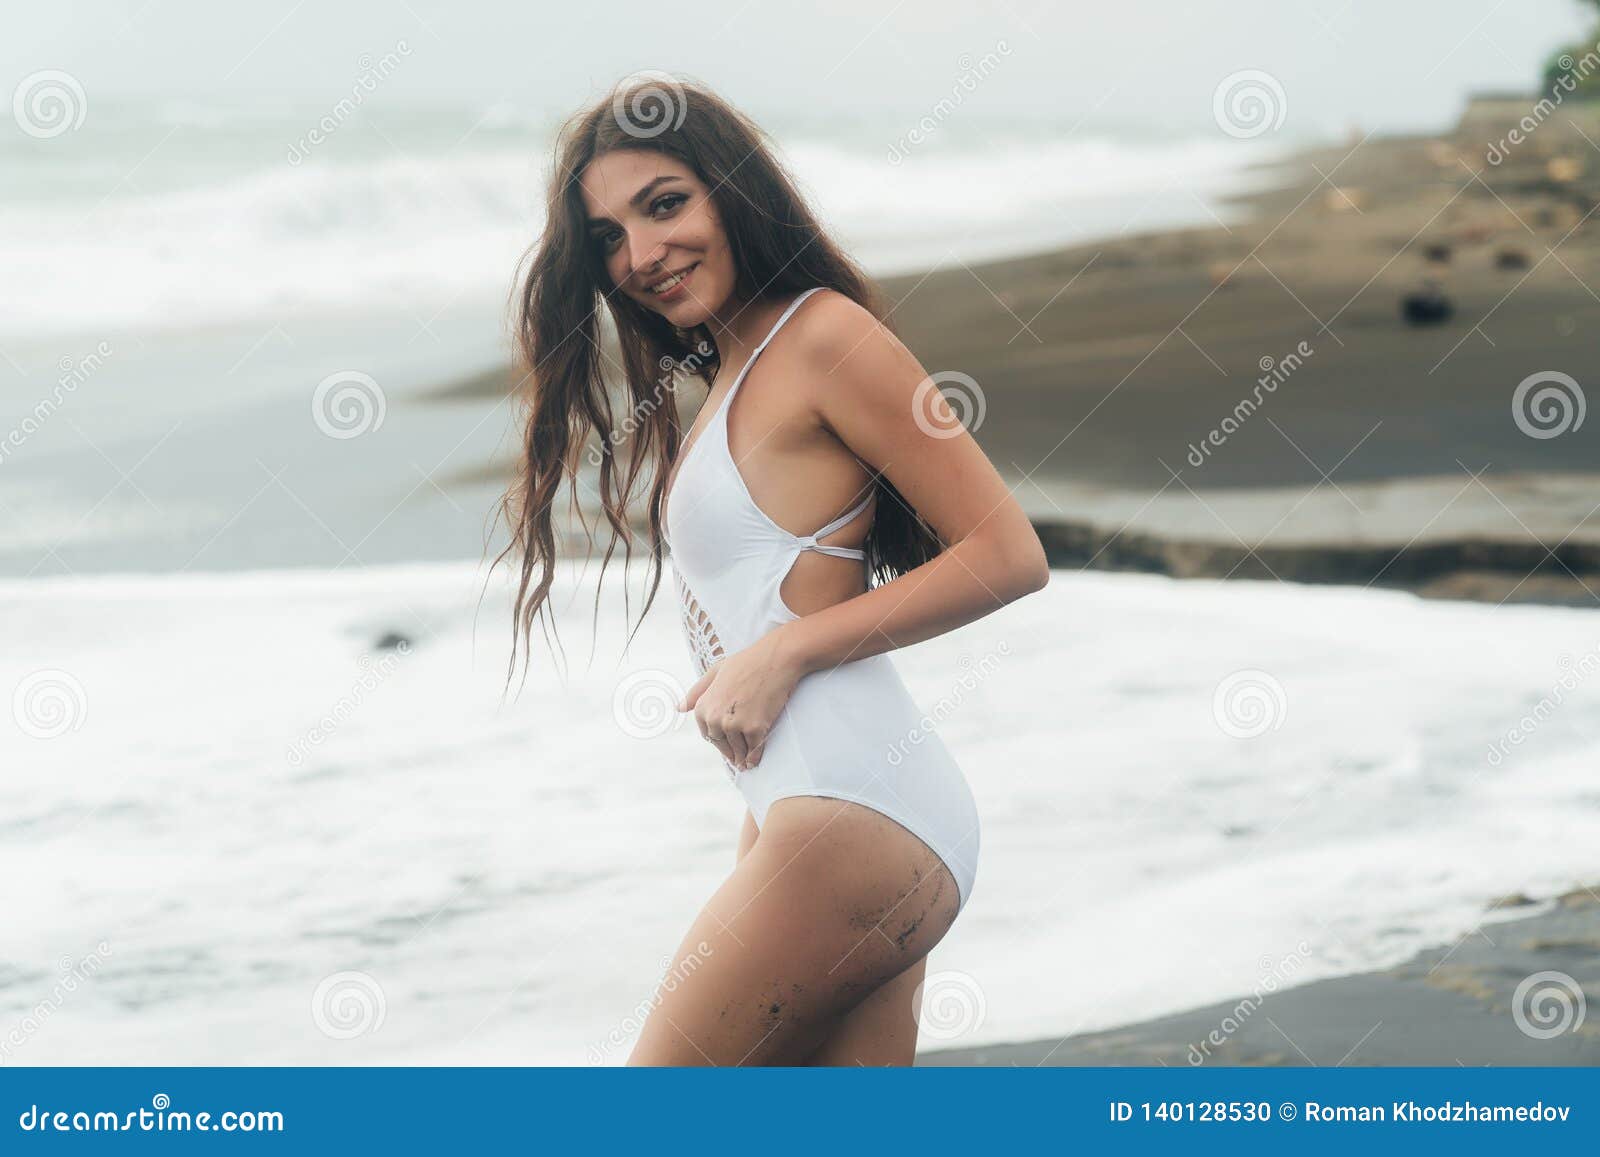 Retrato De La Mujer Joven En El Traje De Baño Blanco Presenta En La Playa De La Arena Foto de archivo - de pechos, negro: